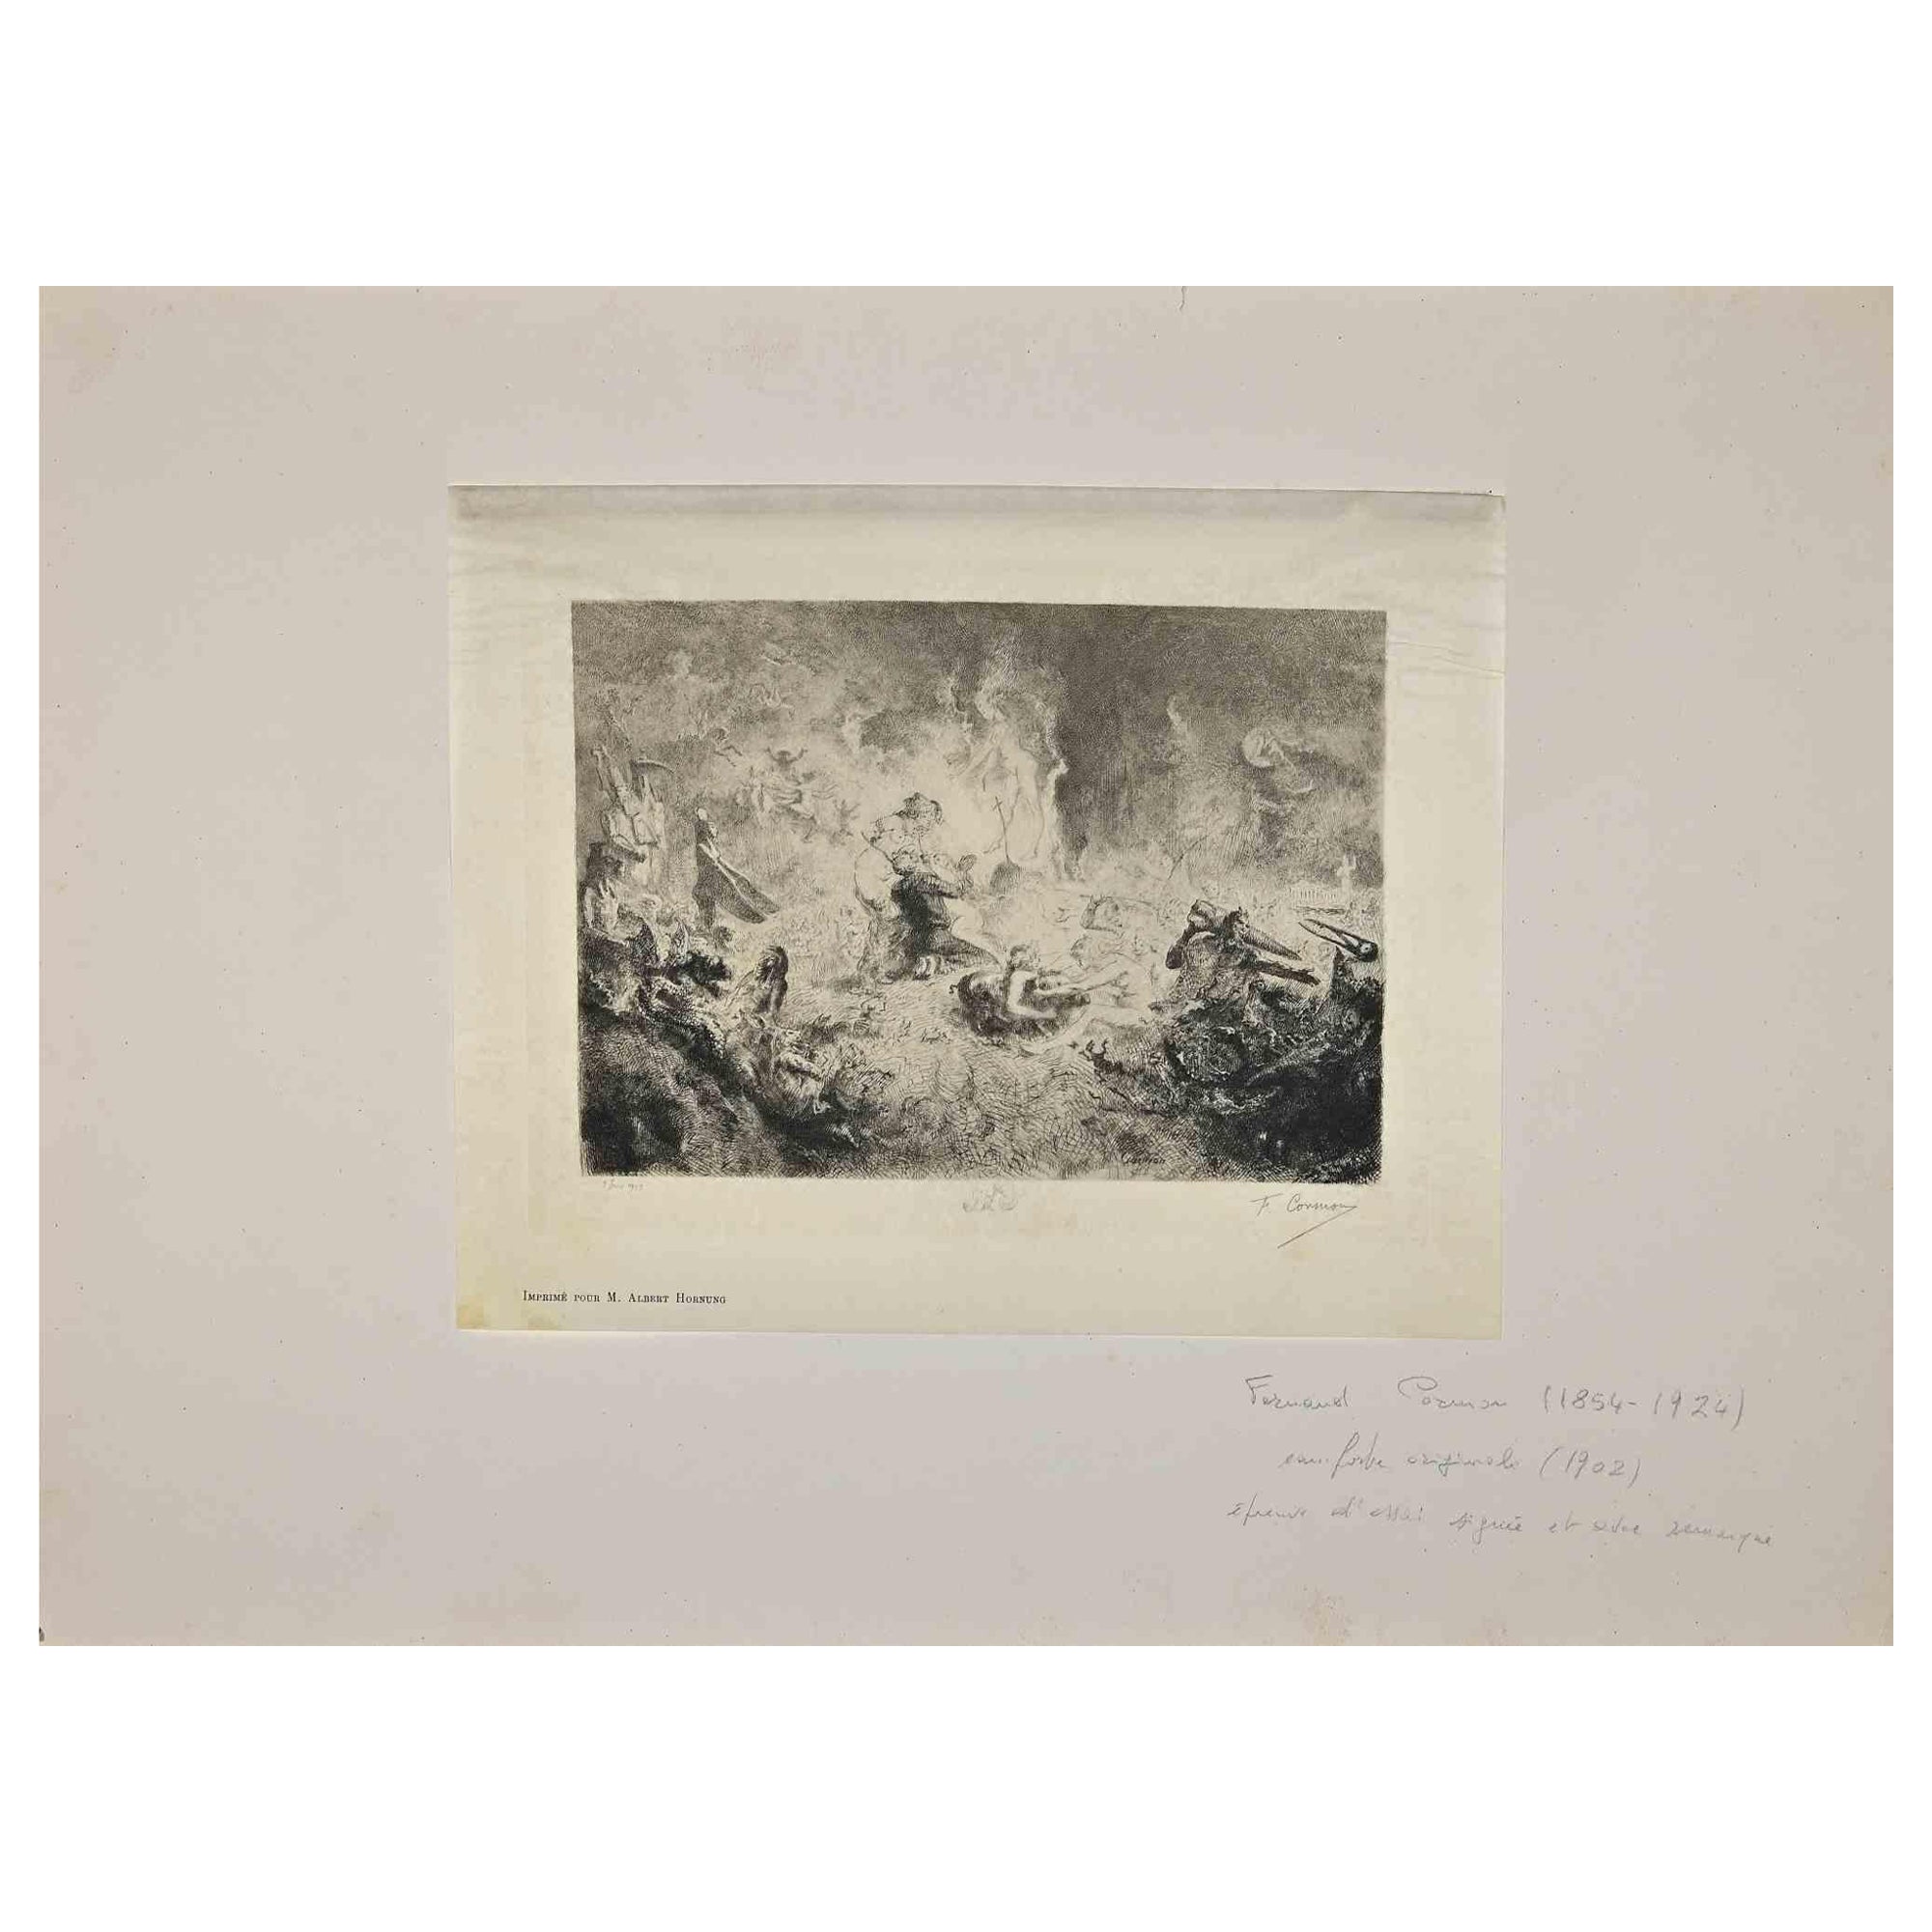 Mythologische Komposition ist eine Originalradierung von Fernand Cormon (1854-1924) aus dem Jahr 1902.

Guter Zustand, einschließlich eines Papp-Passpartouts (45x63 cm).

Handsigniert vom Künstler in der rechten unteren Ecke.

Gedruckt von M. Albert